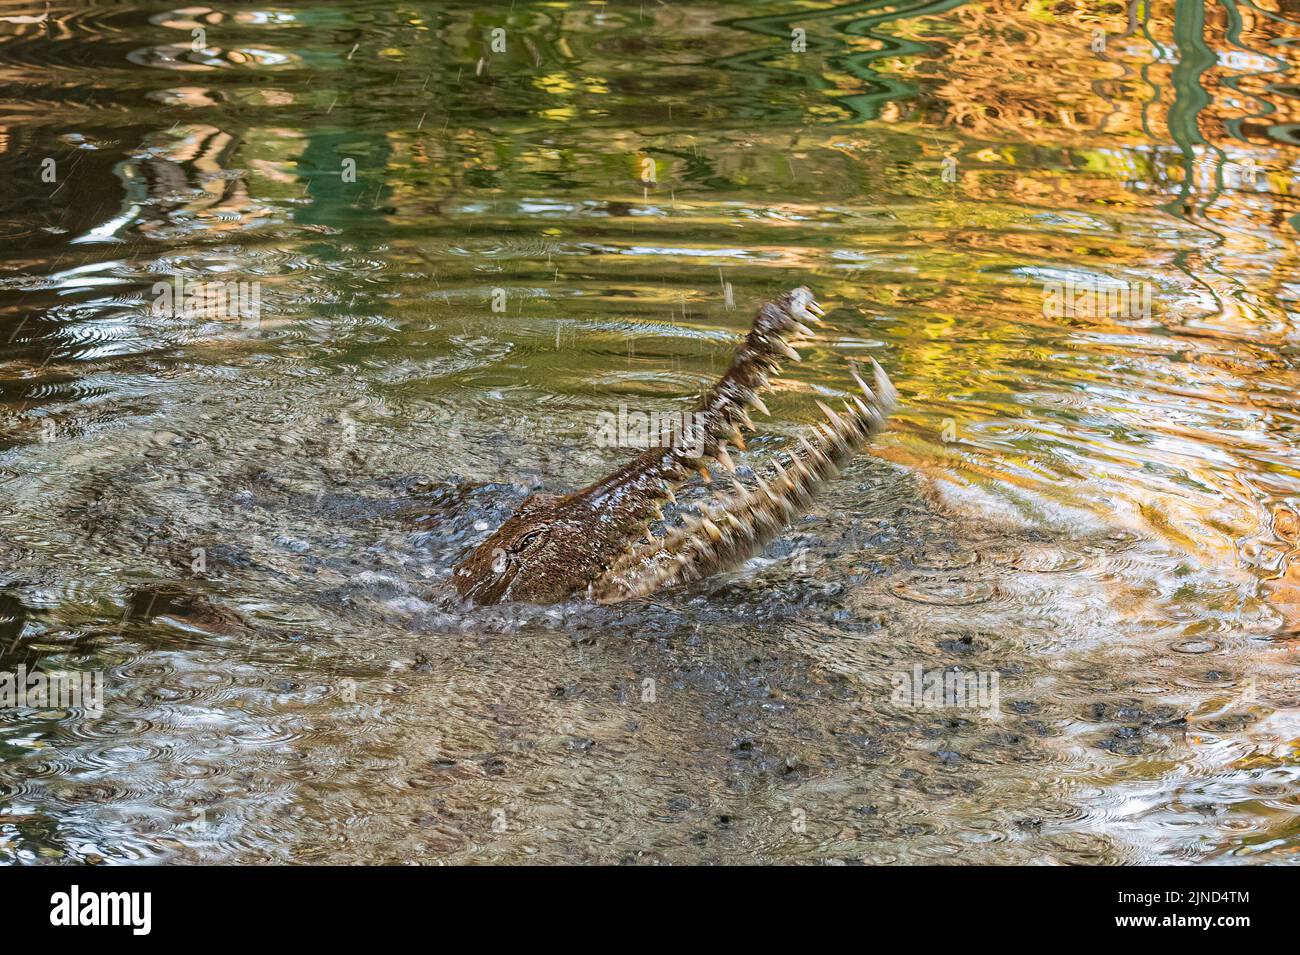 Imagen de un cocodrilo de agua dulce (Crocodylus johnstoni) con la boca abierta y mostrando los dientes en un río, Territorio del Norte, Territorio del Norte, Australia Foto de stock